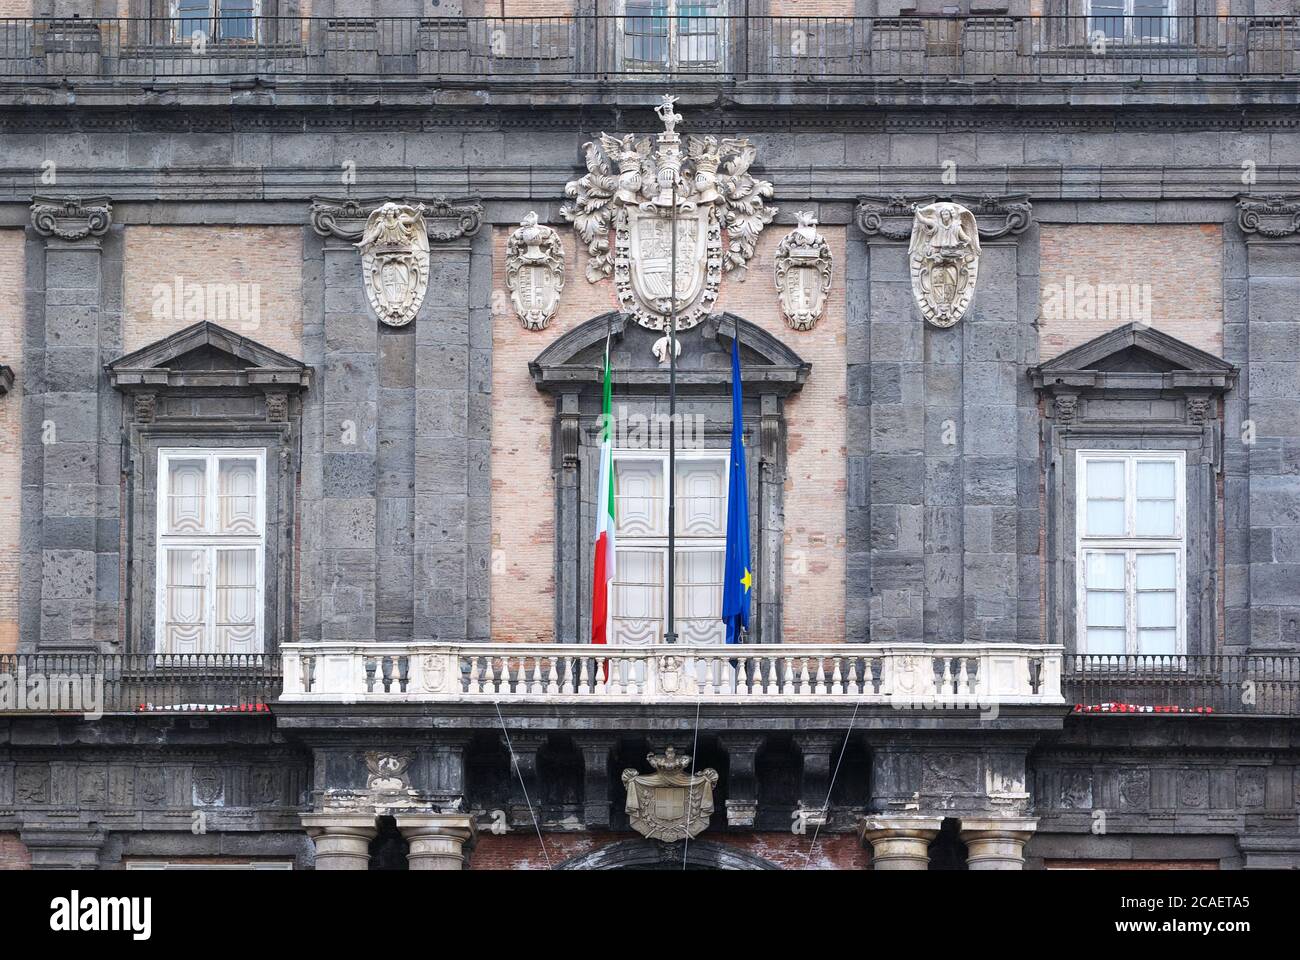 NEAPEL, ITALIEN - GENUARY 04, 2008: Detail Fassade des Königspalastes von Neapel historisches Denkmal und Wahrzeichen von Kampanien Tourismus Stockfoto